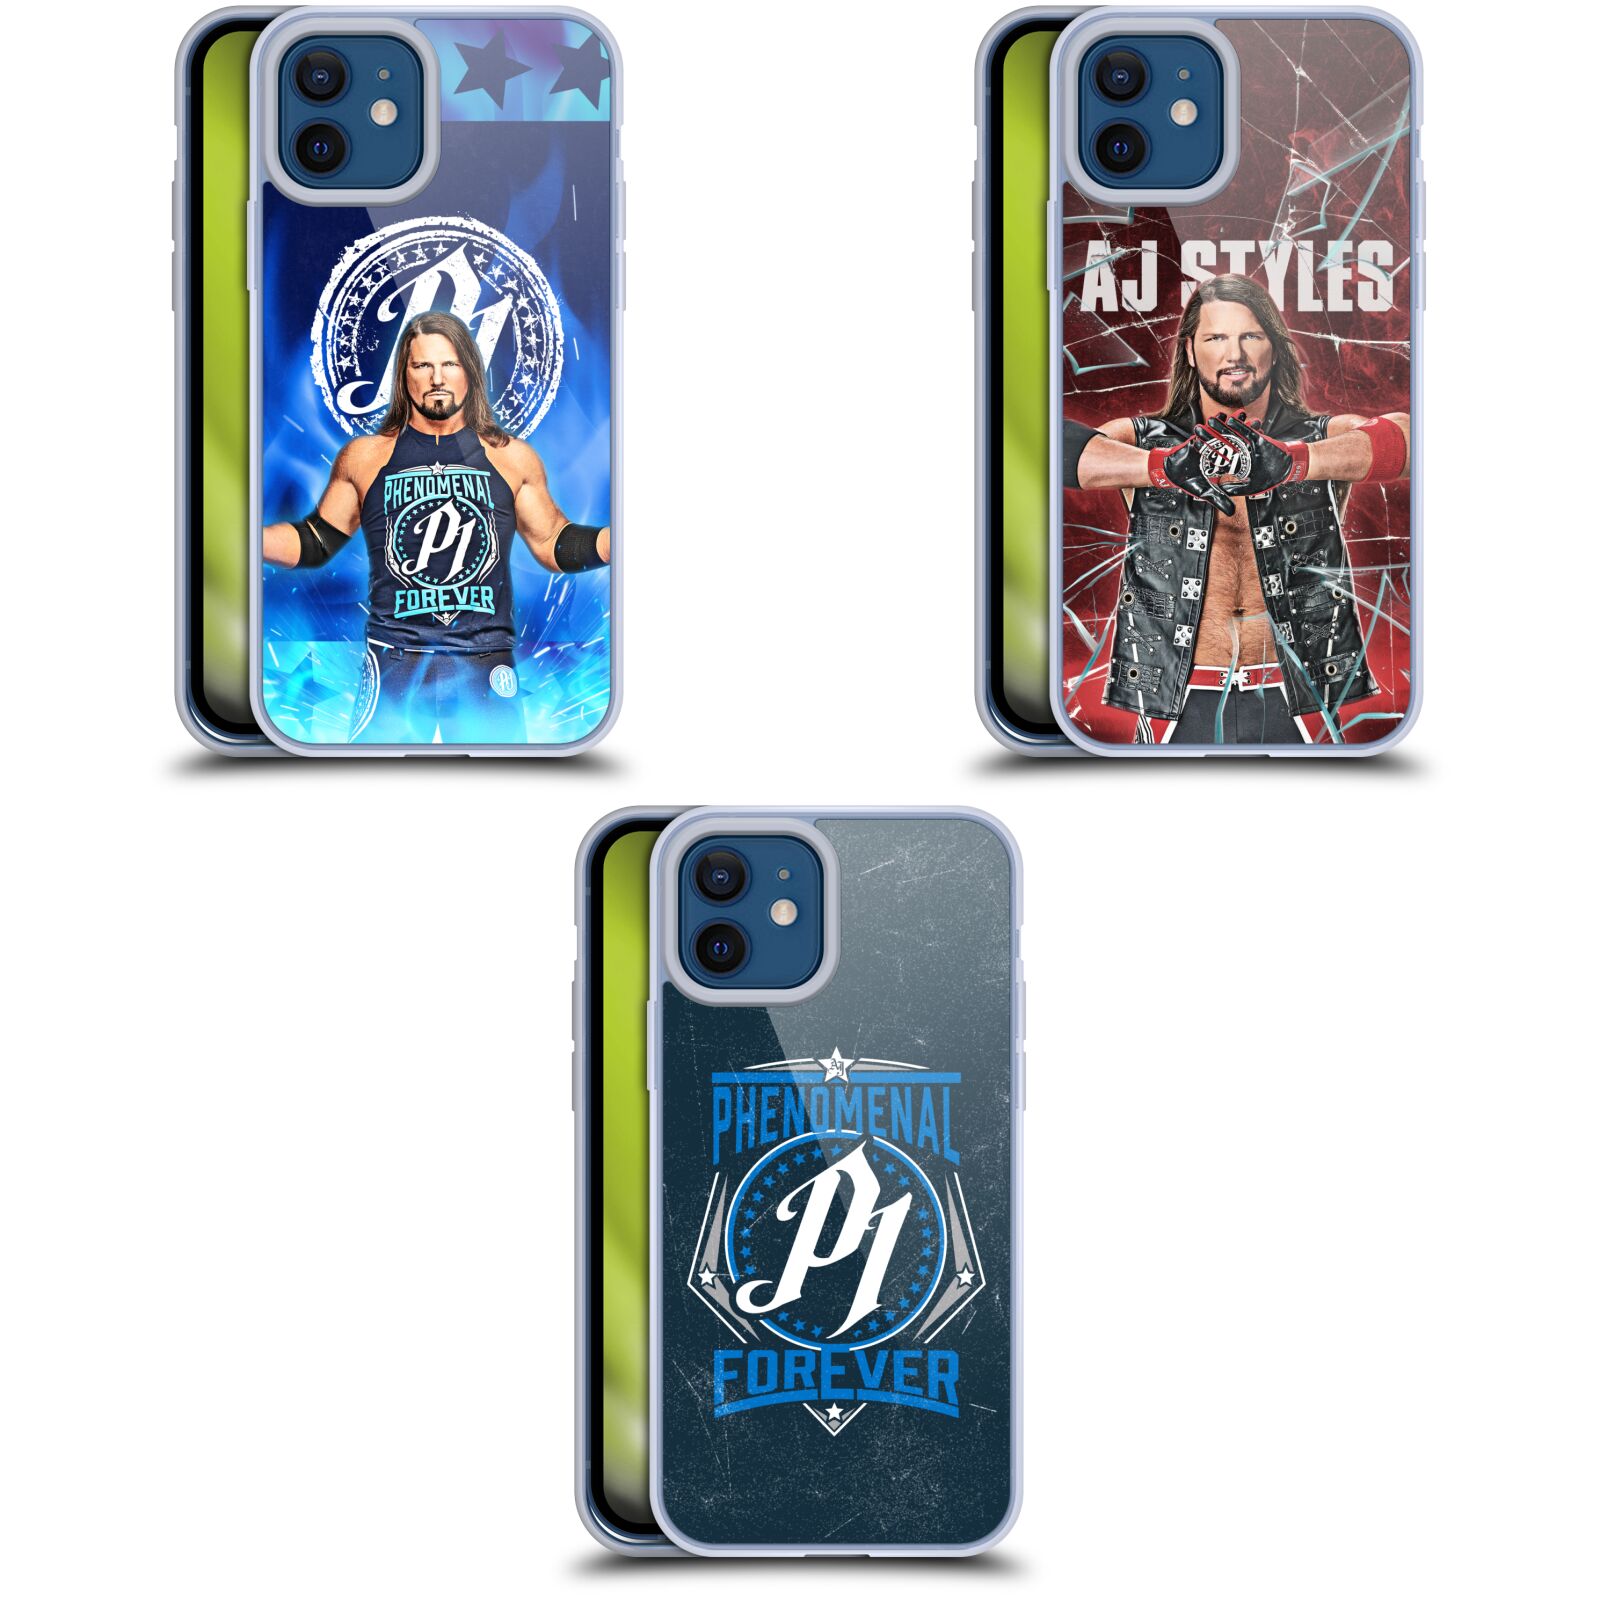 公式ライセンス WWE AJスタイルズ ソフトジェルケース Apple iPhone 電話 スマホケース 全機種対応 グッズ ワイヤレス充電 対応 Qiワイヤレス充電 Qi充電